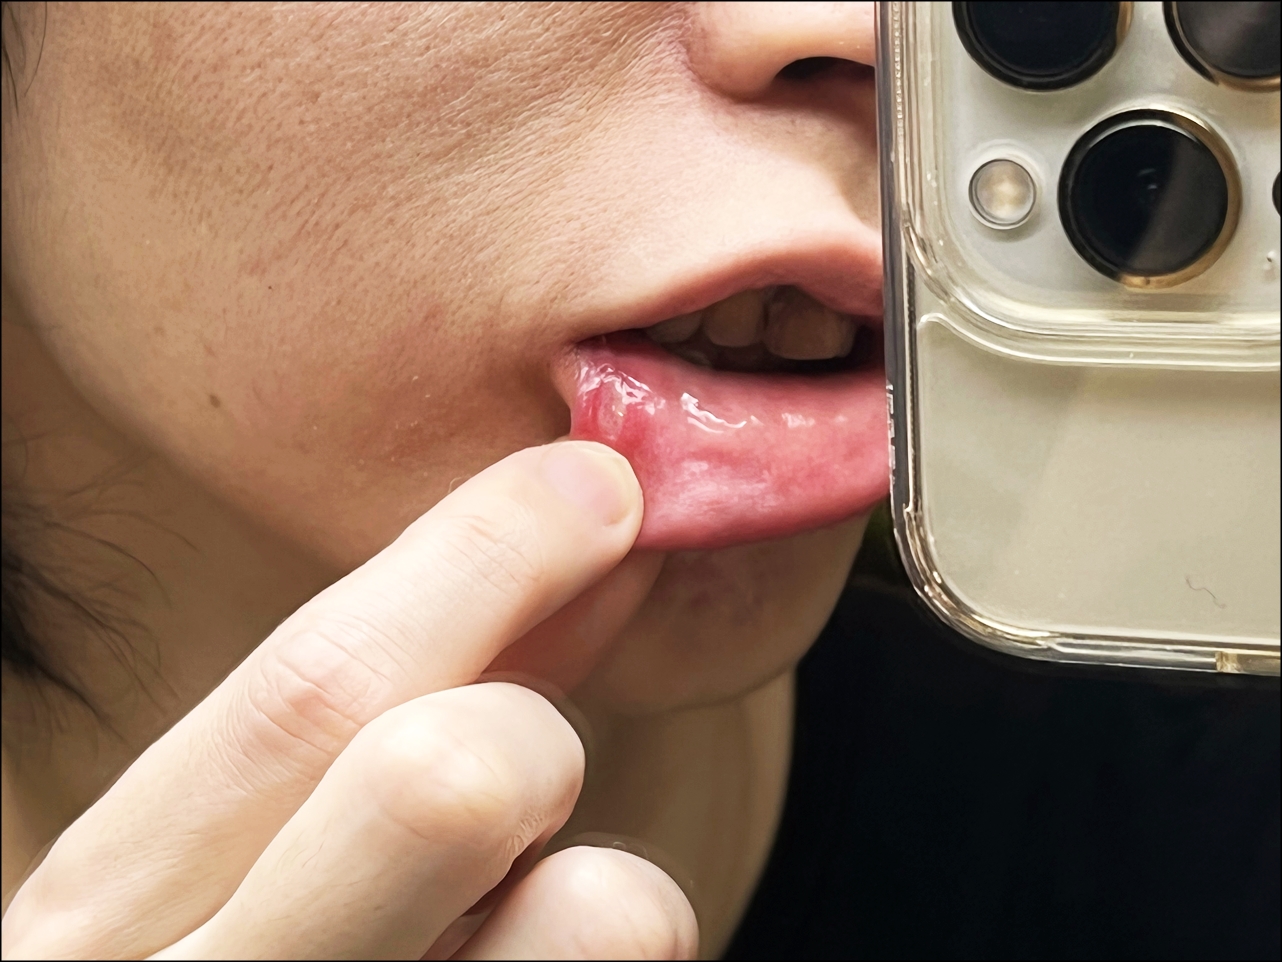 口内炎を早く治すパッチ薬「トラフルダイレクトa」を実際に口に貼り付けます 口内炎を早く治す方法。痛いしみる症状を和らげるオススメの薬の紹介。ビタミン摂取も回復に役立ちます。